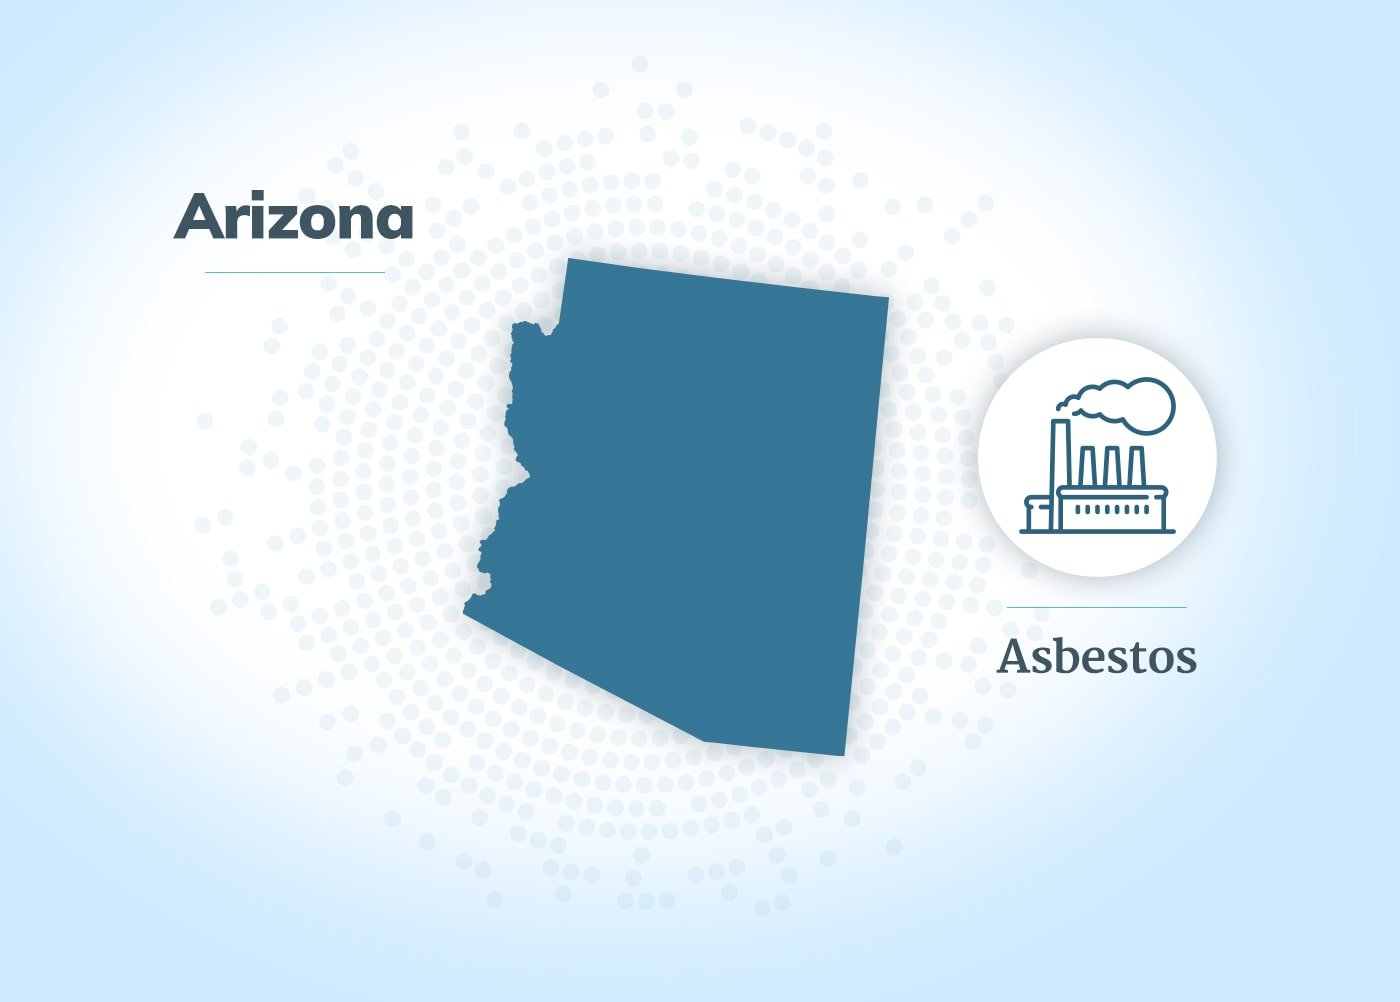 石棉exposure in Arizona